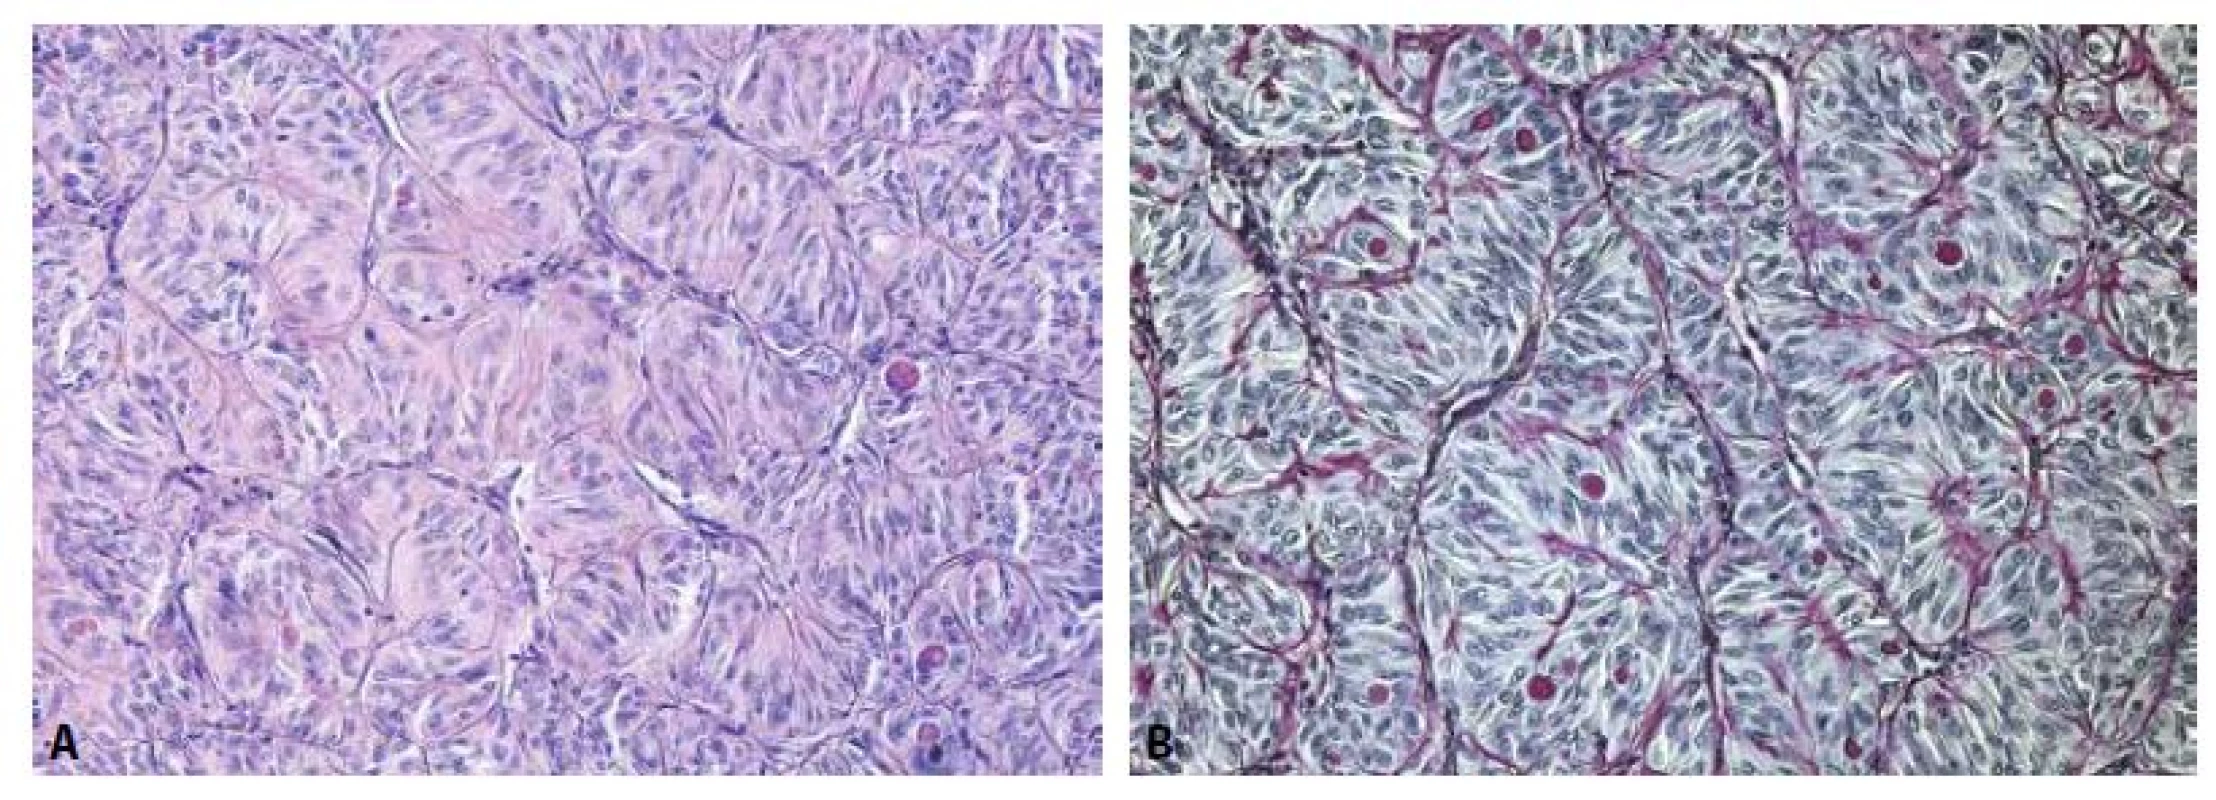 Solidně-alveolárně uspořádané protáhlé nádorové buňky s protáhlými až okrouhlými jádry a PAS pozitivními eosinofilními globulemi v cytoplazmě.
(A - barvení hematoxylinem eozinem, zvětšení 200x, B - barvení PAS, zvětšení 200x).